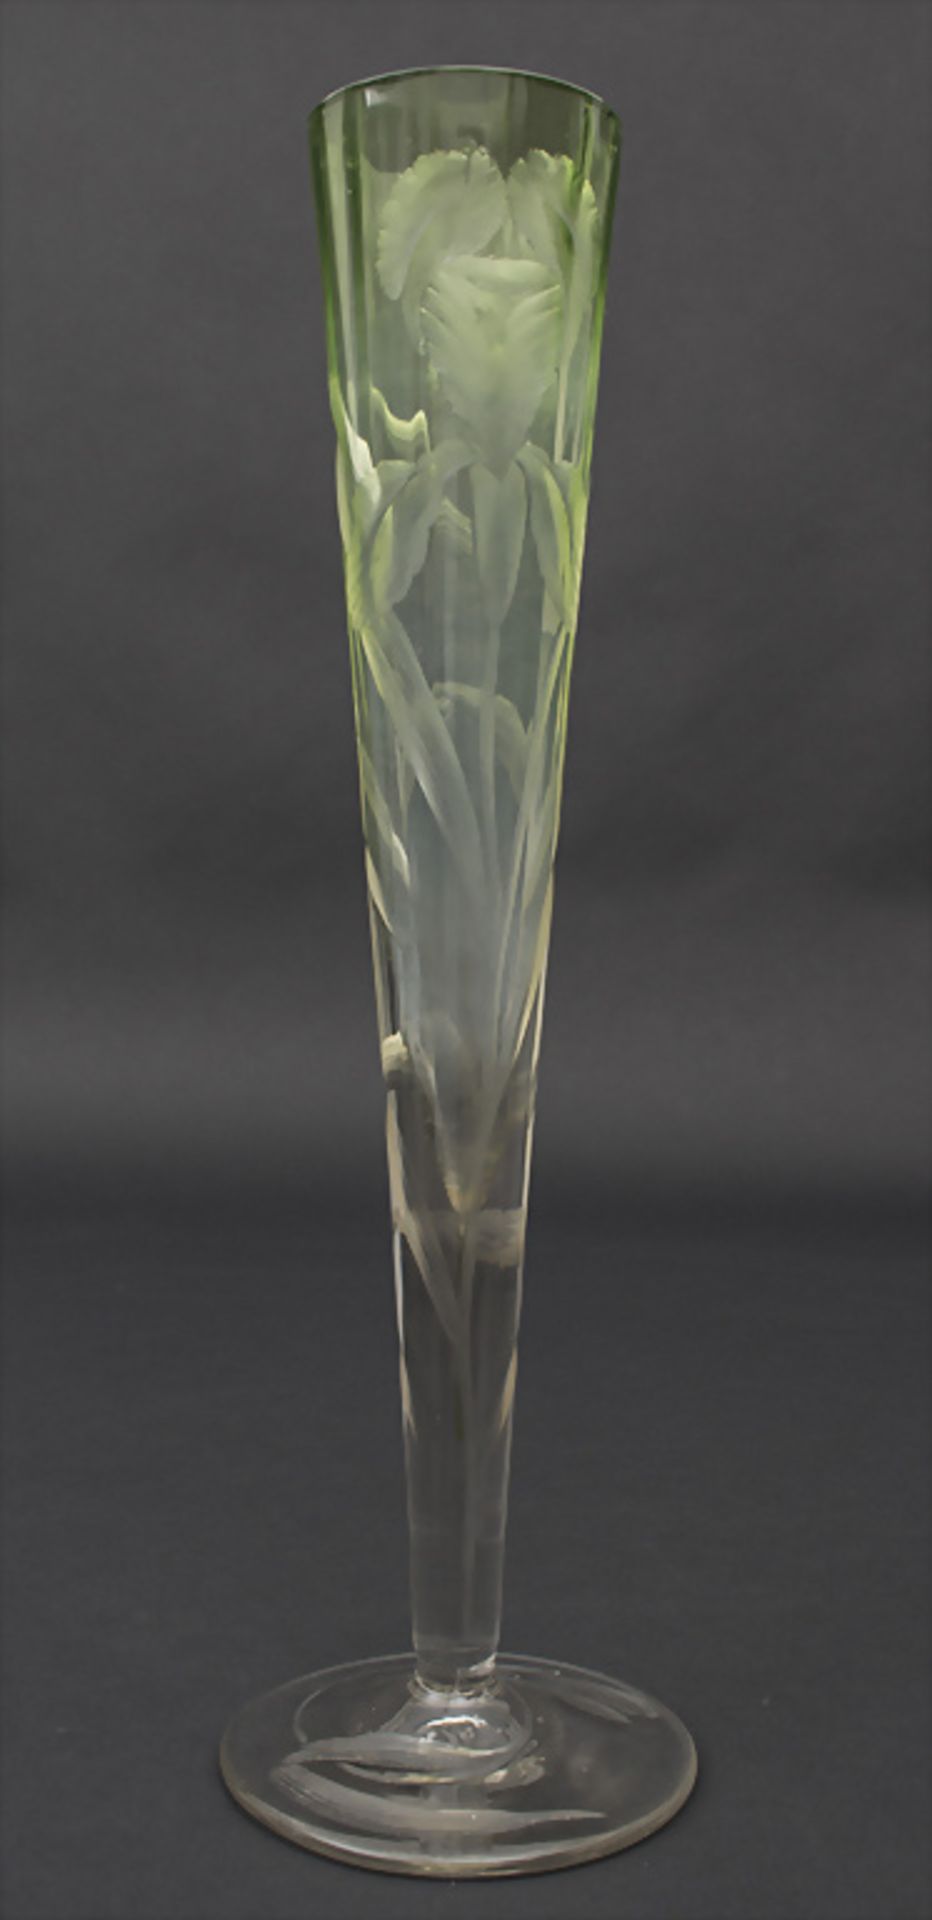 Jugendstil Vase mit Iris / Art Nouveau Vase With Iris, Ludwig Moser, Karlsbad, ca. 1900 Material: